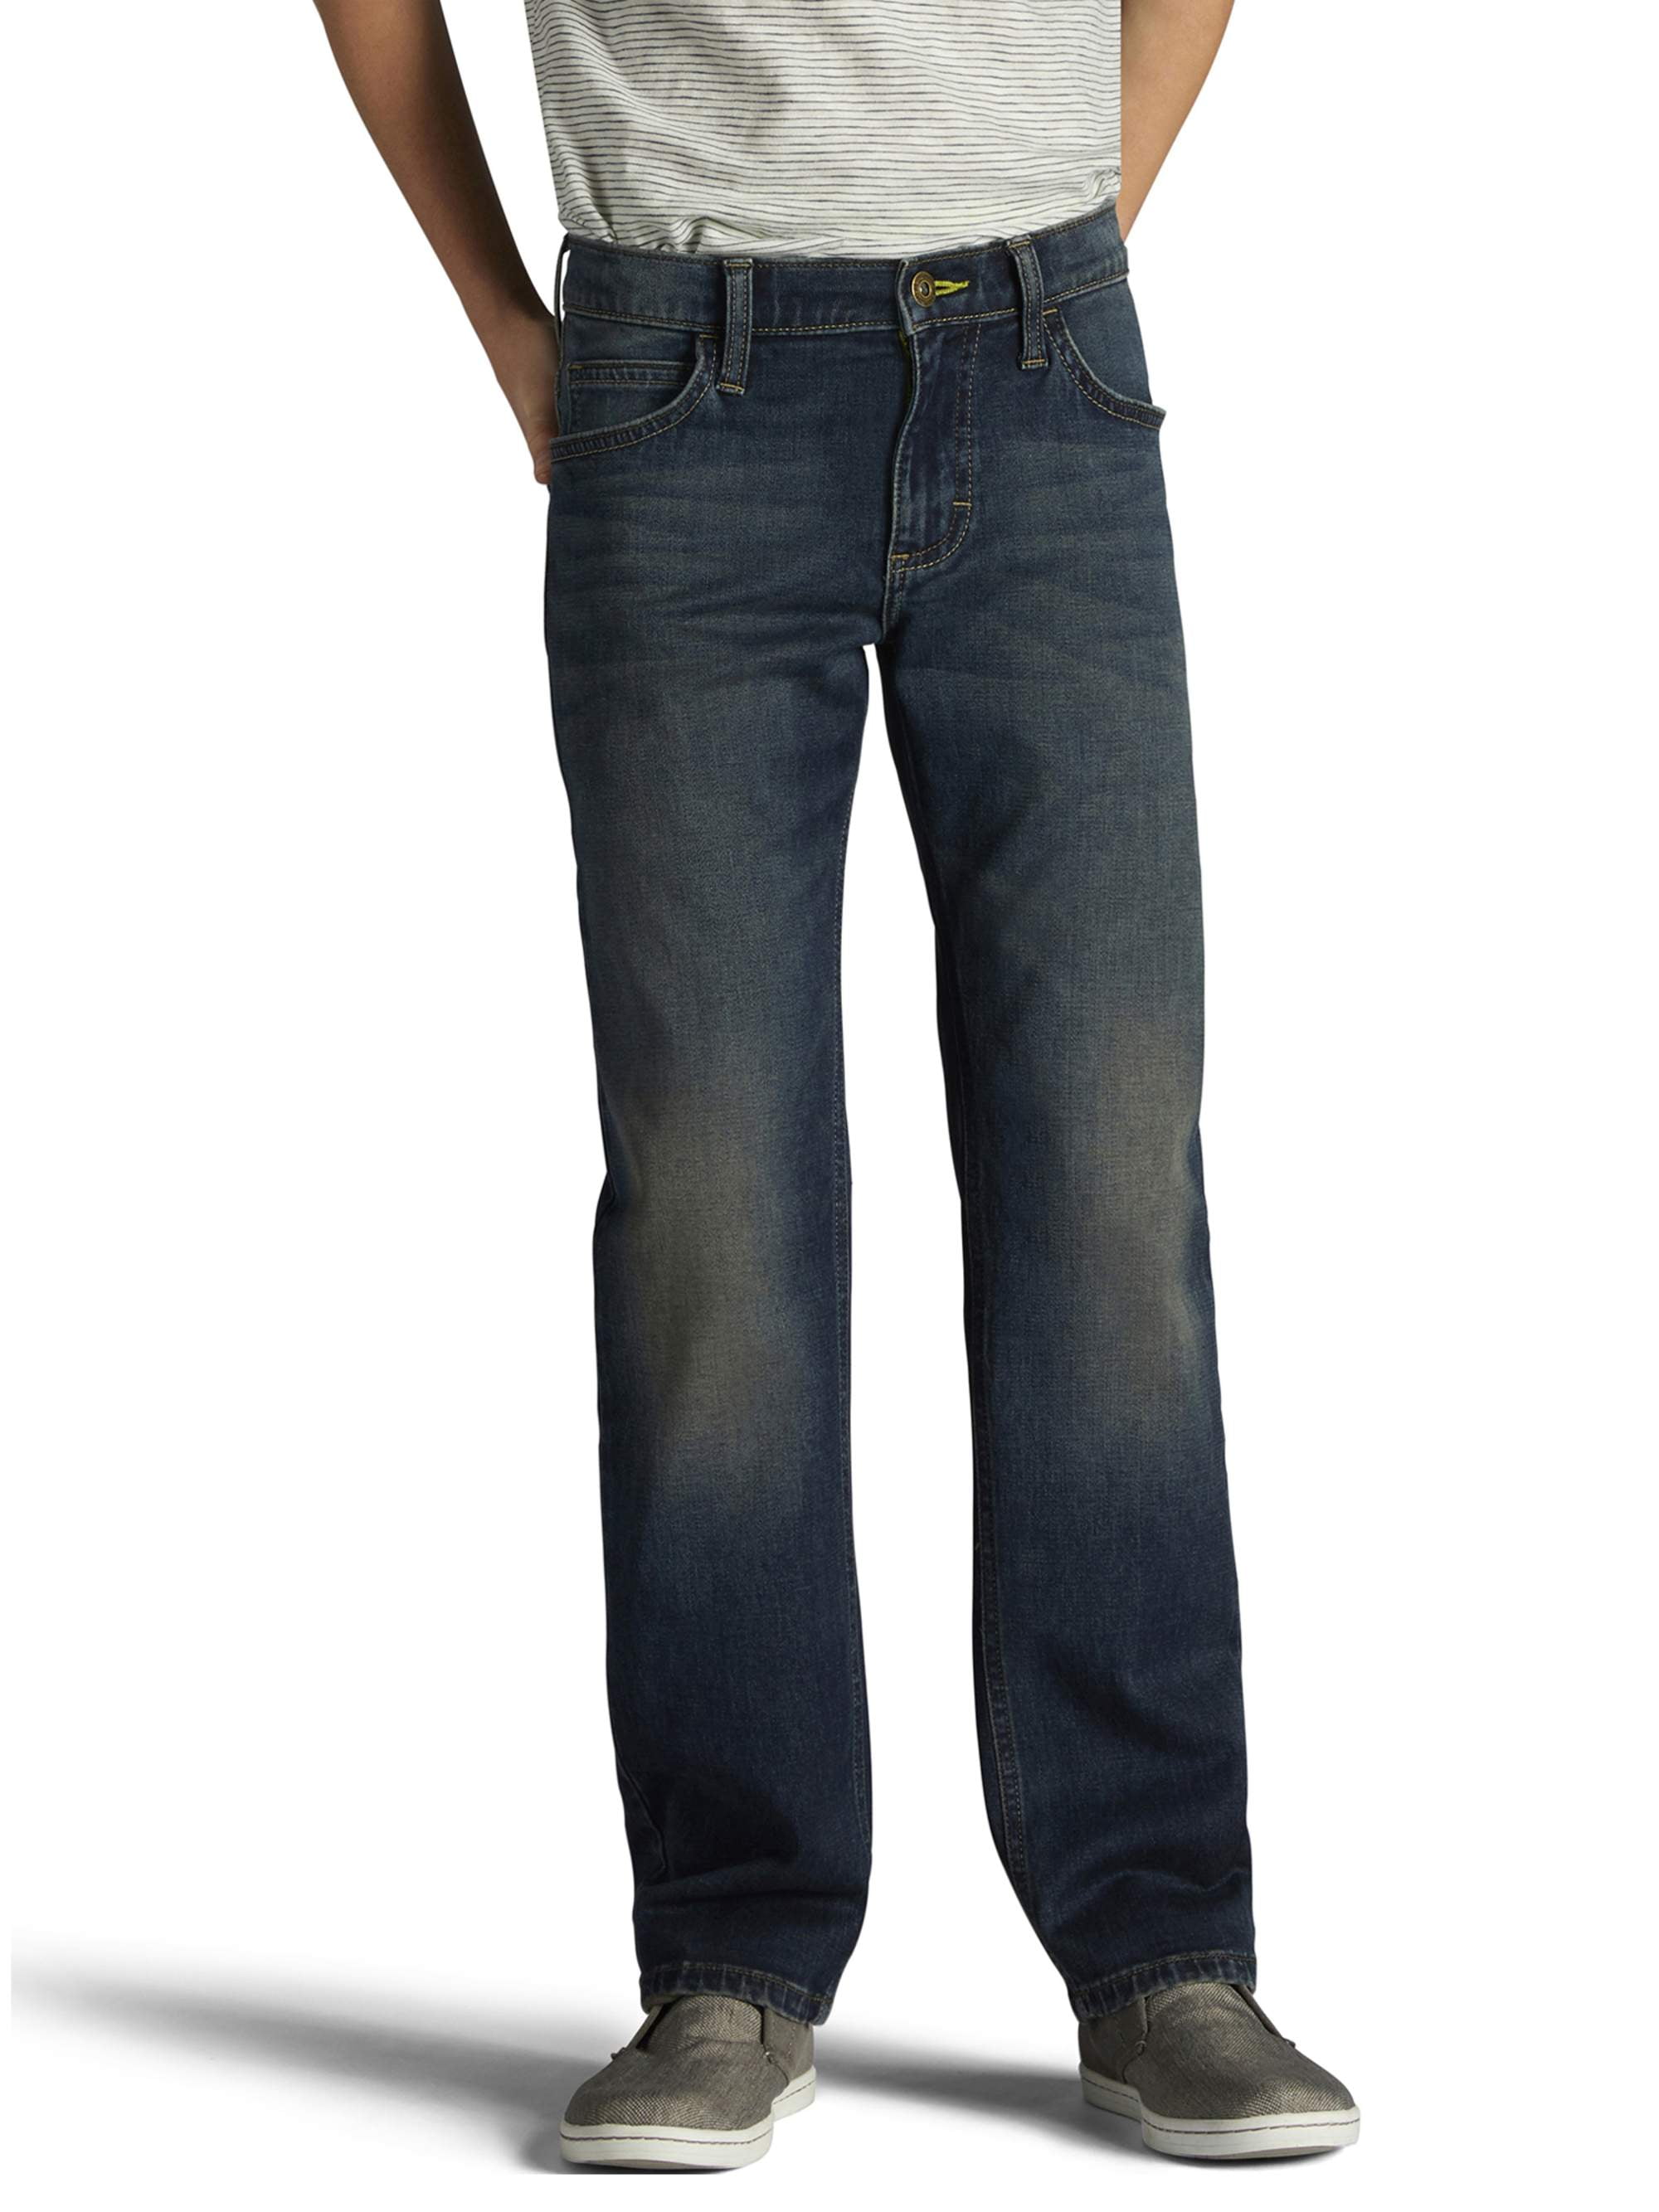 husky boy jeans size 18